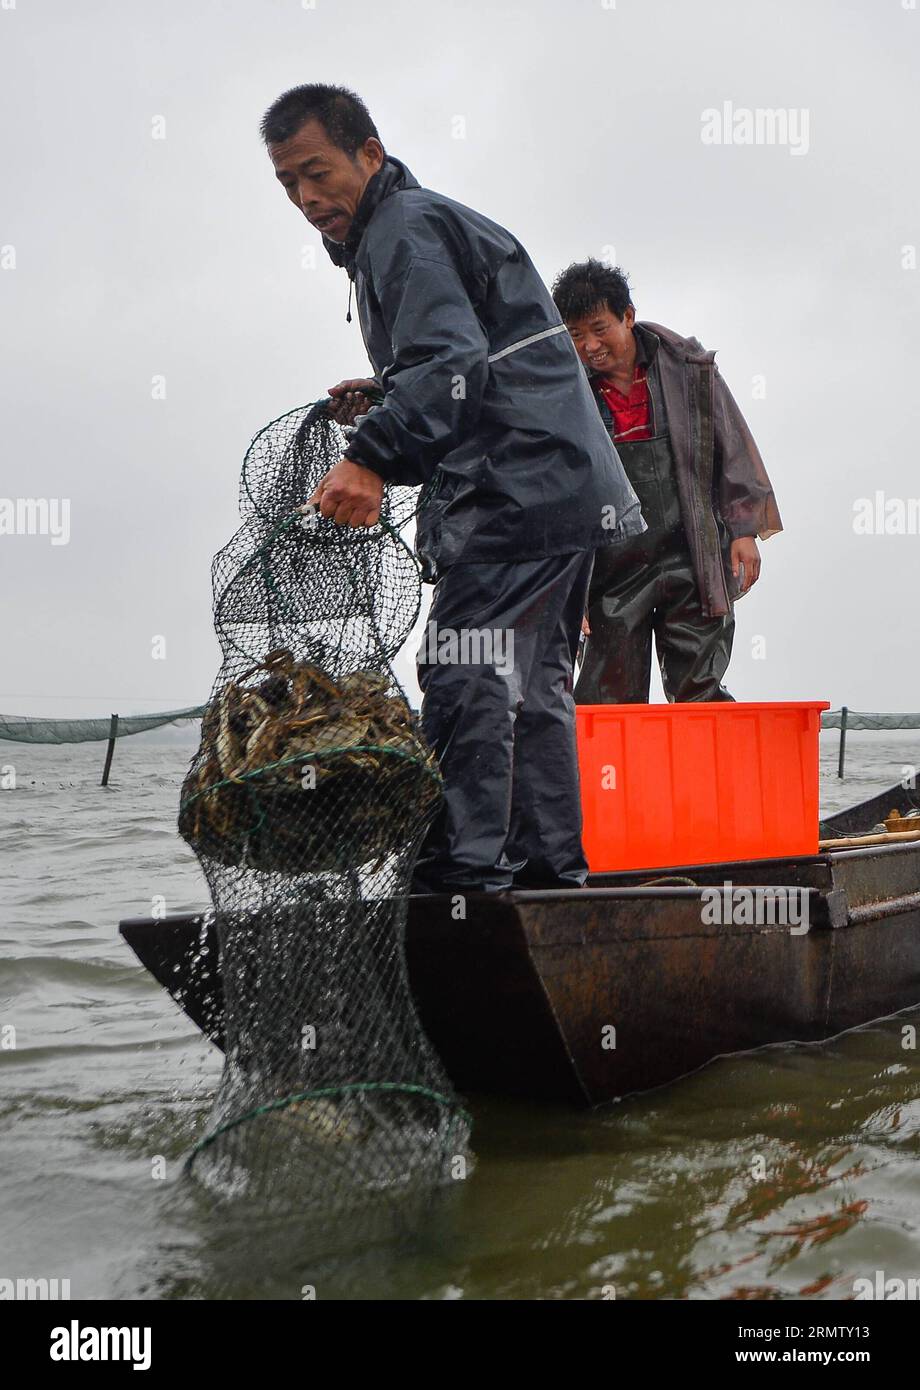 (140923) -- KUNSHAN, 23 septembre 2014 -- deux pêcheurs récoltent des moufles chinoises dans le lac Yangcheng, dans la ville de Bacheng à Kunshan, dans la province du Jiangsu, dans l est de la Chine, le 23 septembre 2014. La saison de récolte 2014 pour le crabe moufle chinois (Eriocheir sinensis) dans le lac Yangcheng, une importante zone productrice, a débuté mardi. Aussi connu comme le grand crabe d'écluse, les crabes chinois à moufles sont favorisés par de nombreux gourmets-amateurs et se vendent bien en ligne et sur les marchés réels ) (wjq) CHINE-JIANGSU-FISHERY-LAC YANGCHENG-PÊCHE CHINOISE CRABE À MOUFLES-RÉCOLTE (CN) LixXiang PUBLICATIONxNOTxINxCHN Kunshan sept 23 2014 deux Fishe Banque D'Images